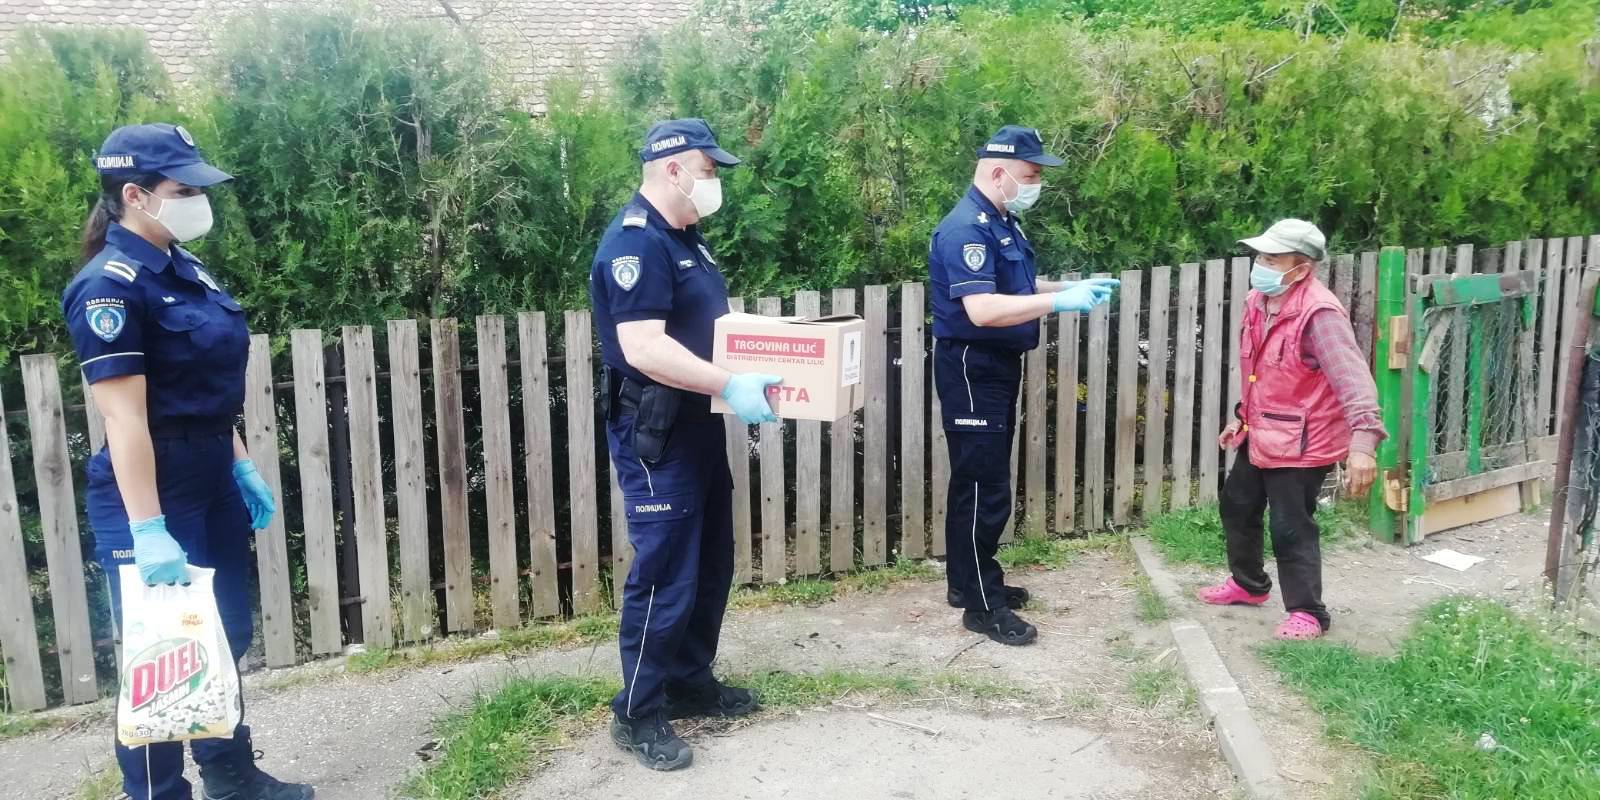 Полицейские из Пожареваца помогли пожилым согражданам